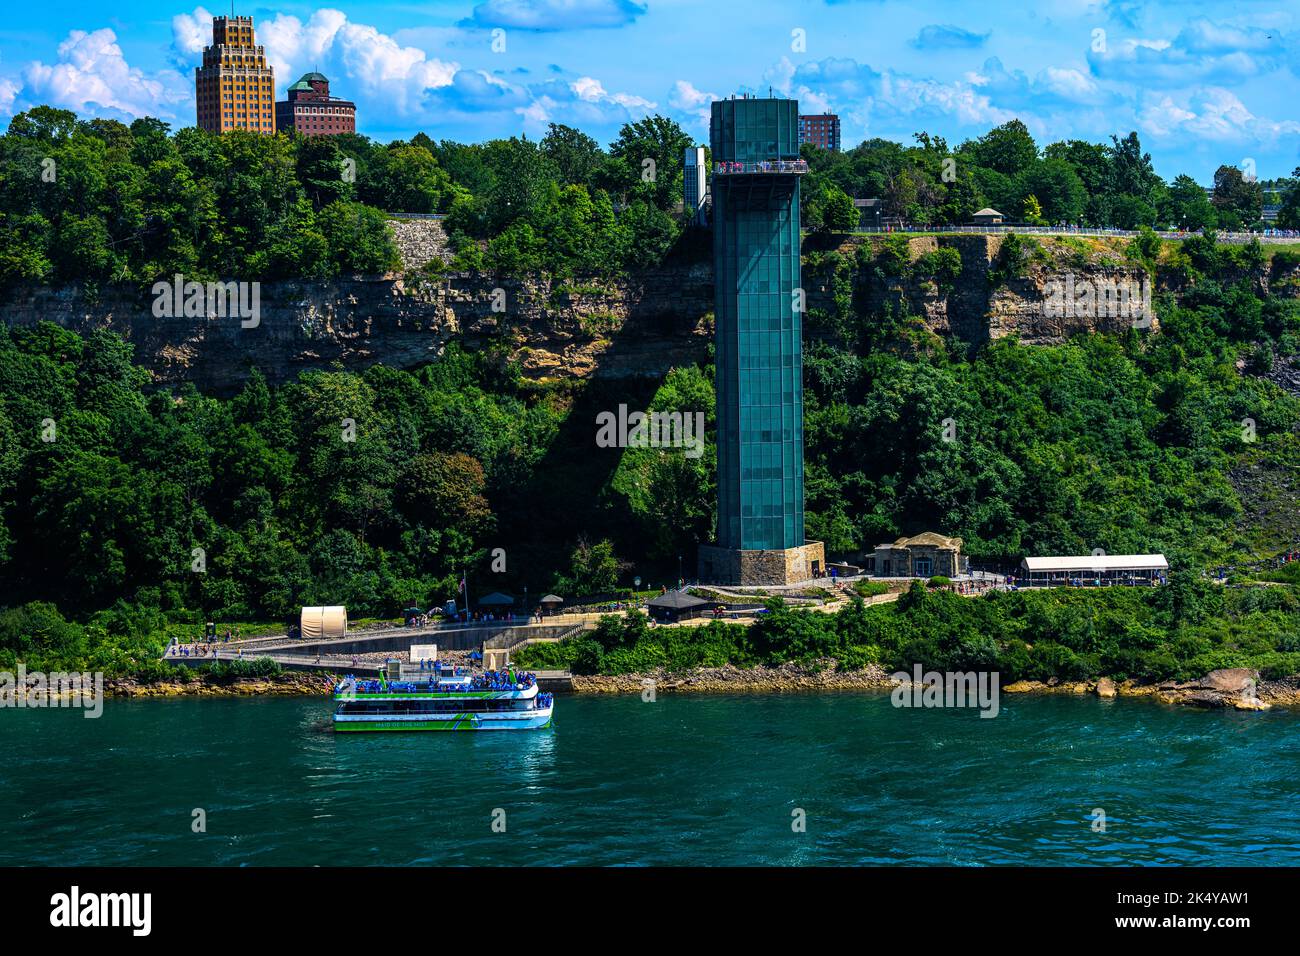 Vista laterale canadese delle cascate del Niagara, delle American Falls, delle Horseshoe Falls, del fiume Niagara, attrazioni turistiche, casinò, fuochi d'artificio e gite in barca al tramonto; Foto Stock